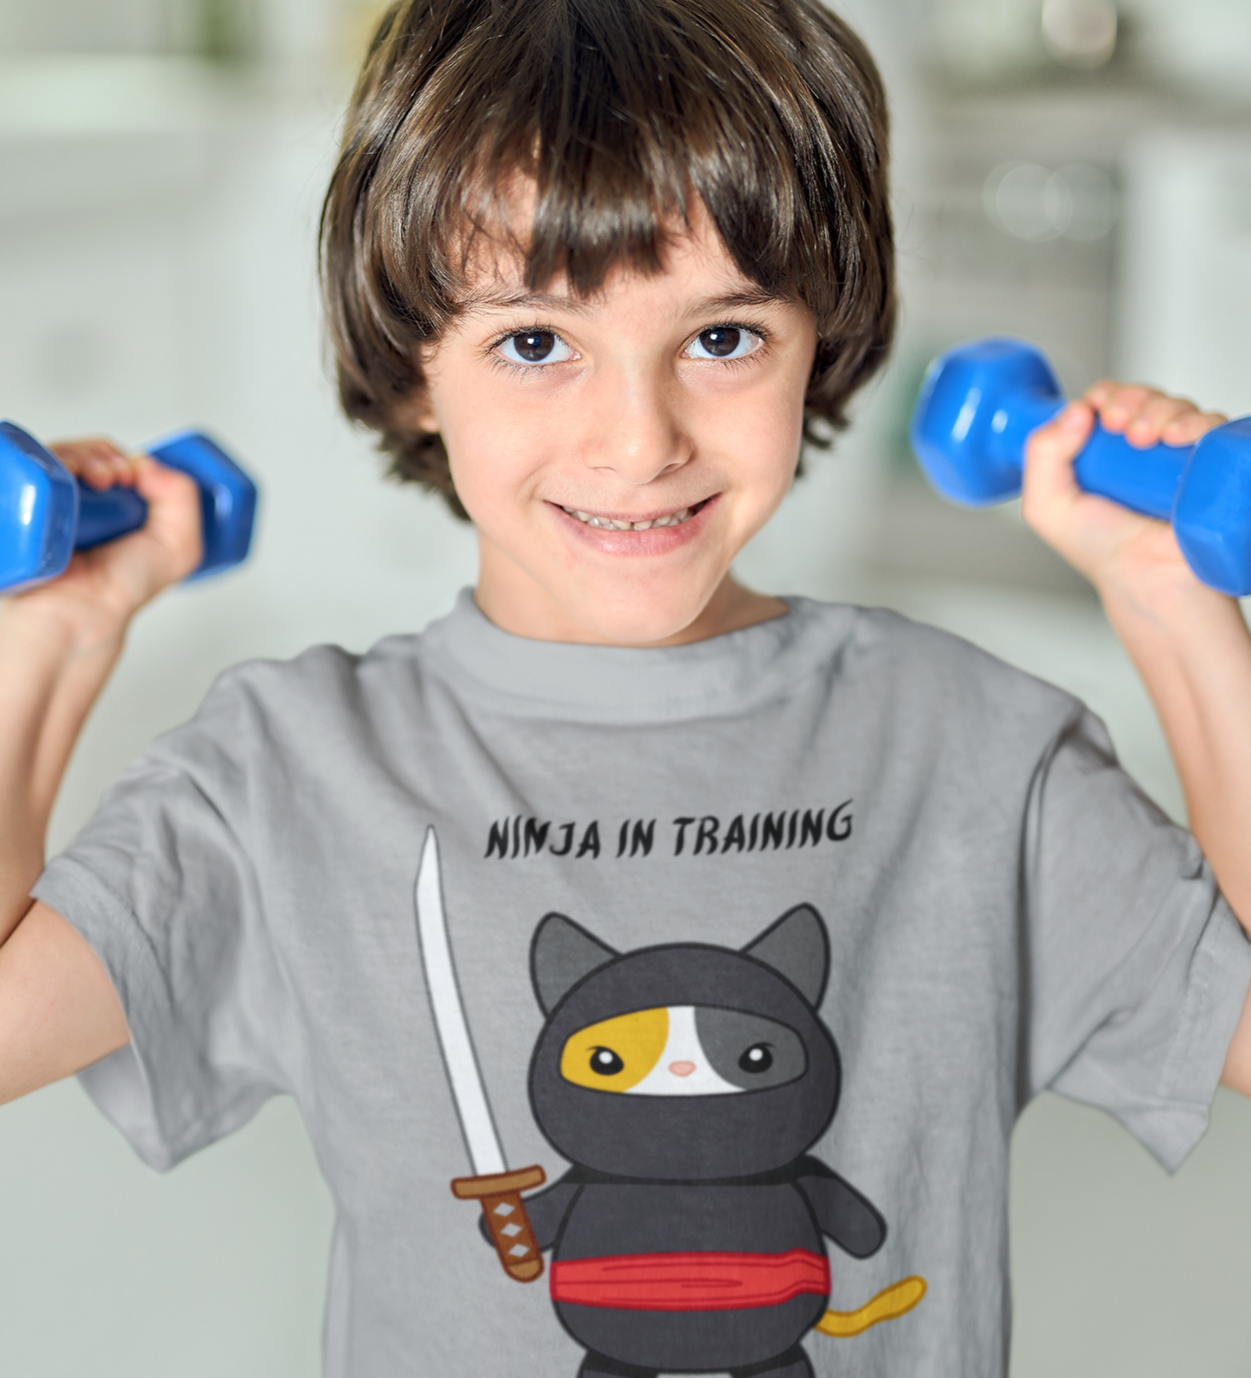 Ninja In Training T-shirt